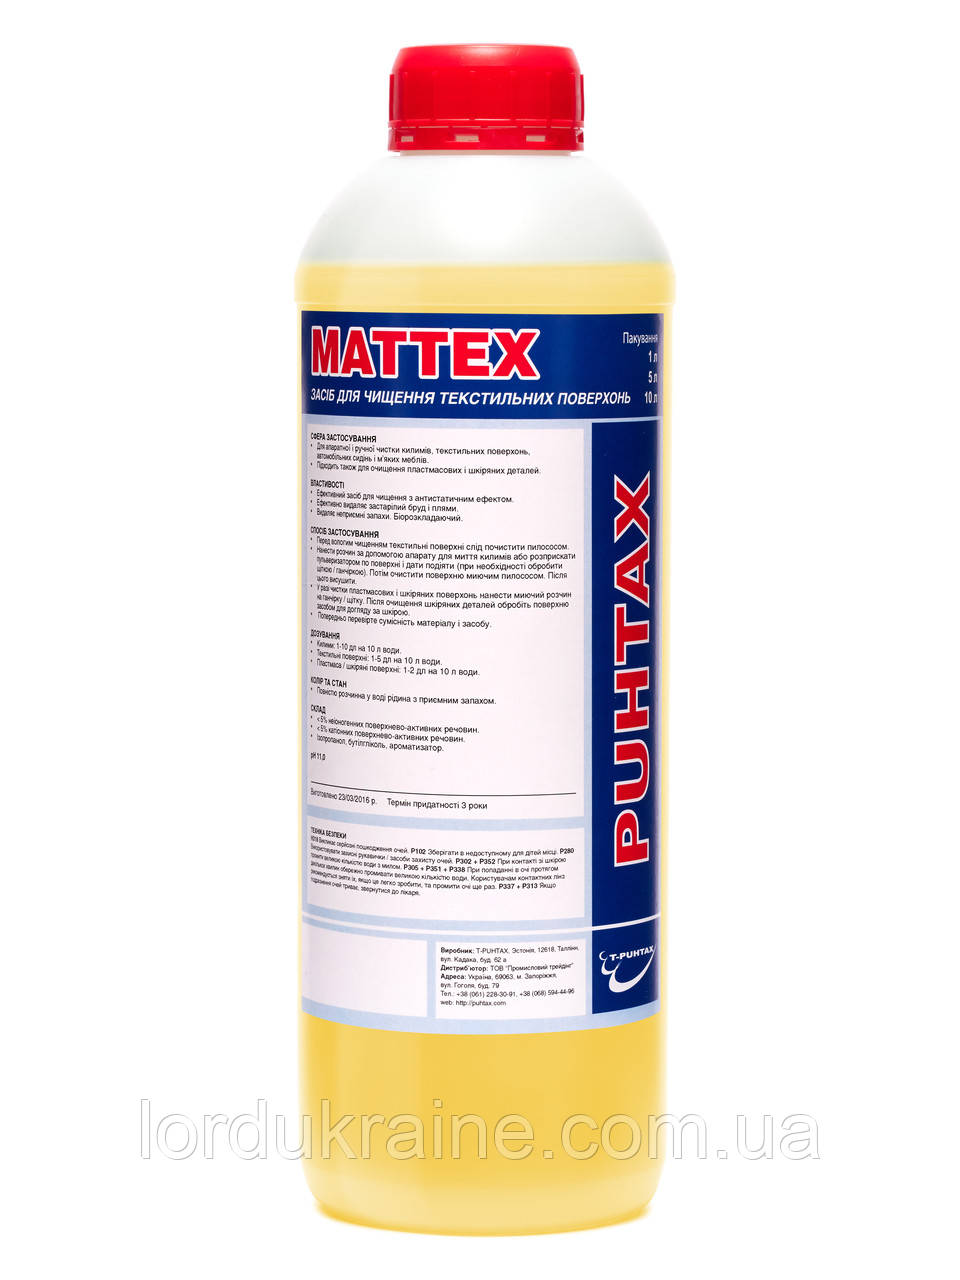 Засіб для чищення текстильних поверхонь MATTEX (1 л.) T-Puhtax